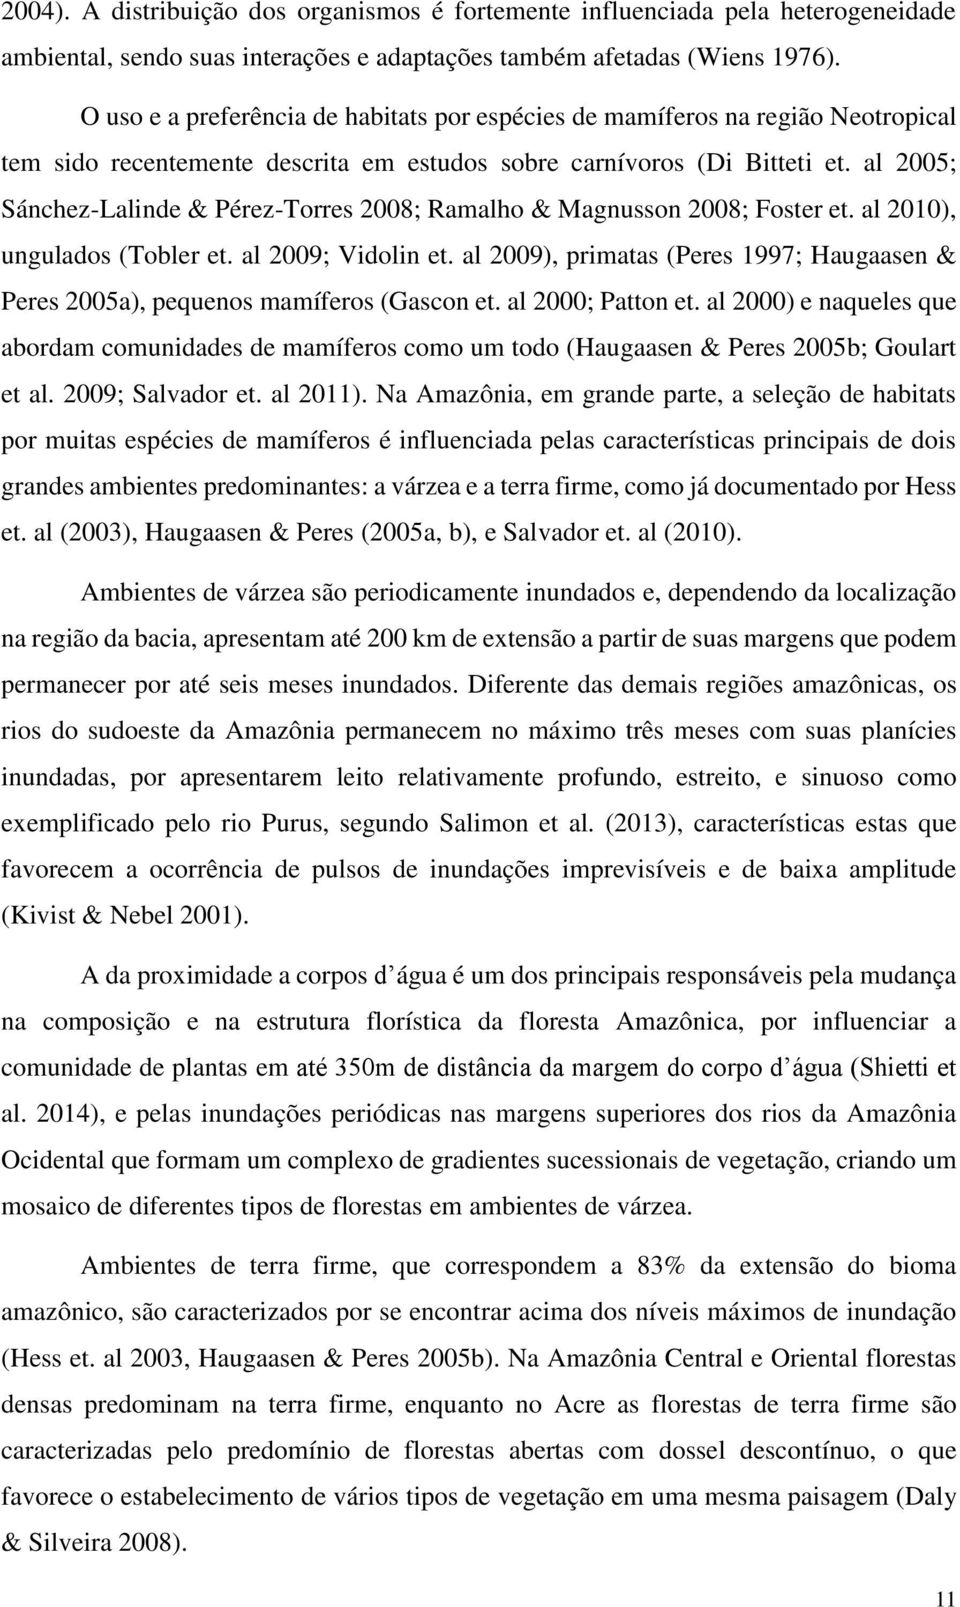 al 2005; Sánchez-Lalinde & Pérez-Torres 2008; Ramalho & Magnusson 2008; Foster et. al 2010), ungulados (Tobler et. al 2009; Vidolin et.